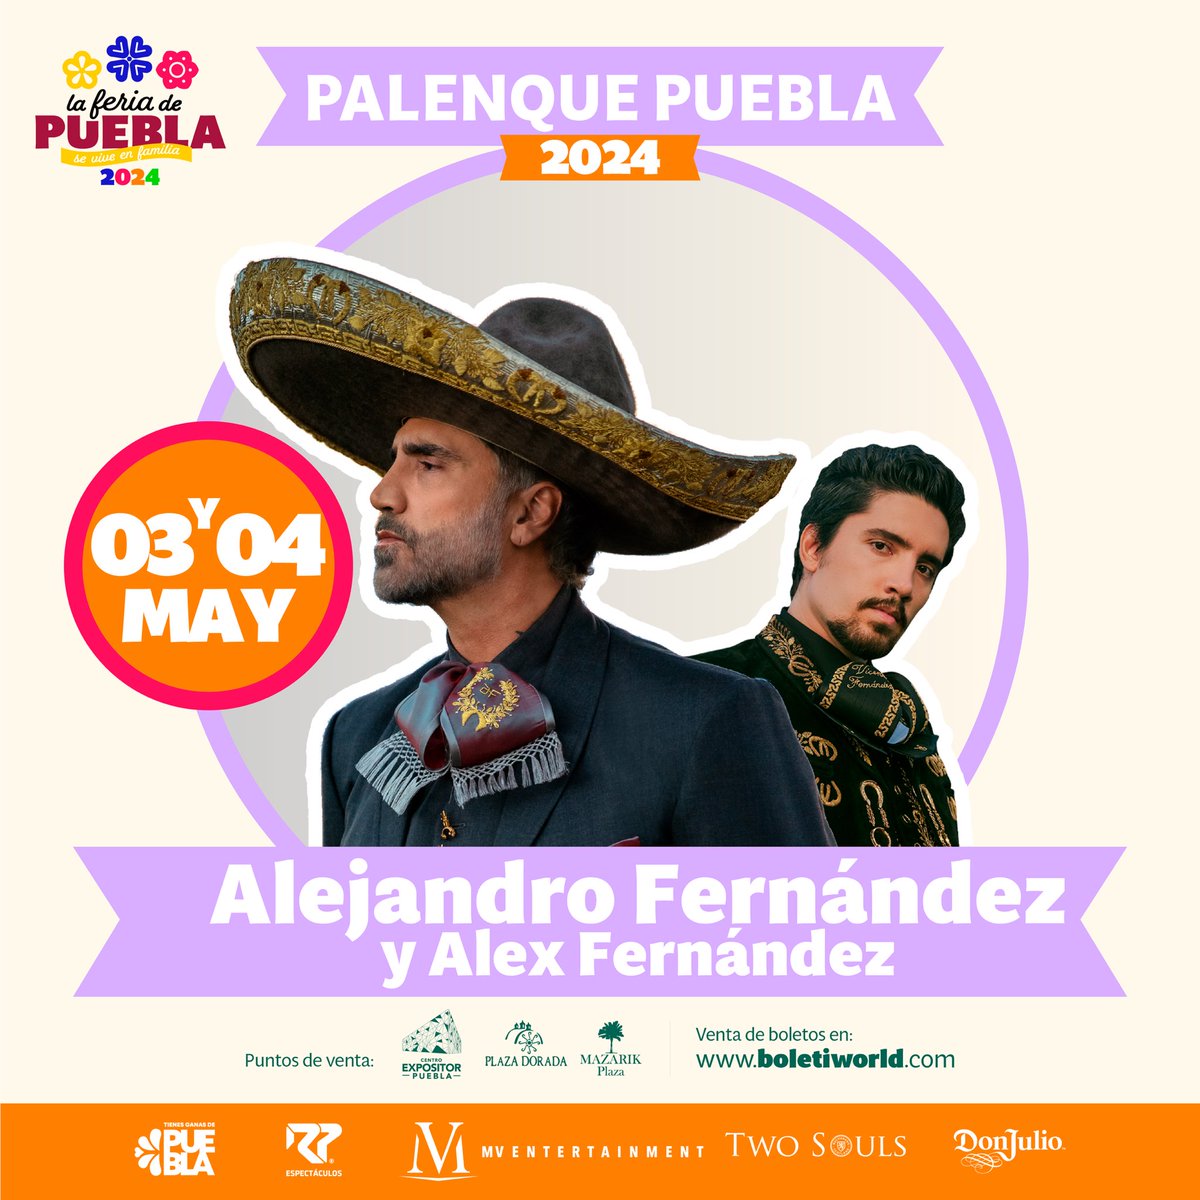 🎉Este 3 y 4 de mayo, Alejandro Fernández y Alex Fernández te esperan en el Palenque de la #FeriaDePuebla 2024. ¡Únete a la fiesta que
#SeViveEnFamilia! 🎶🎤